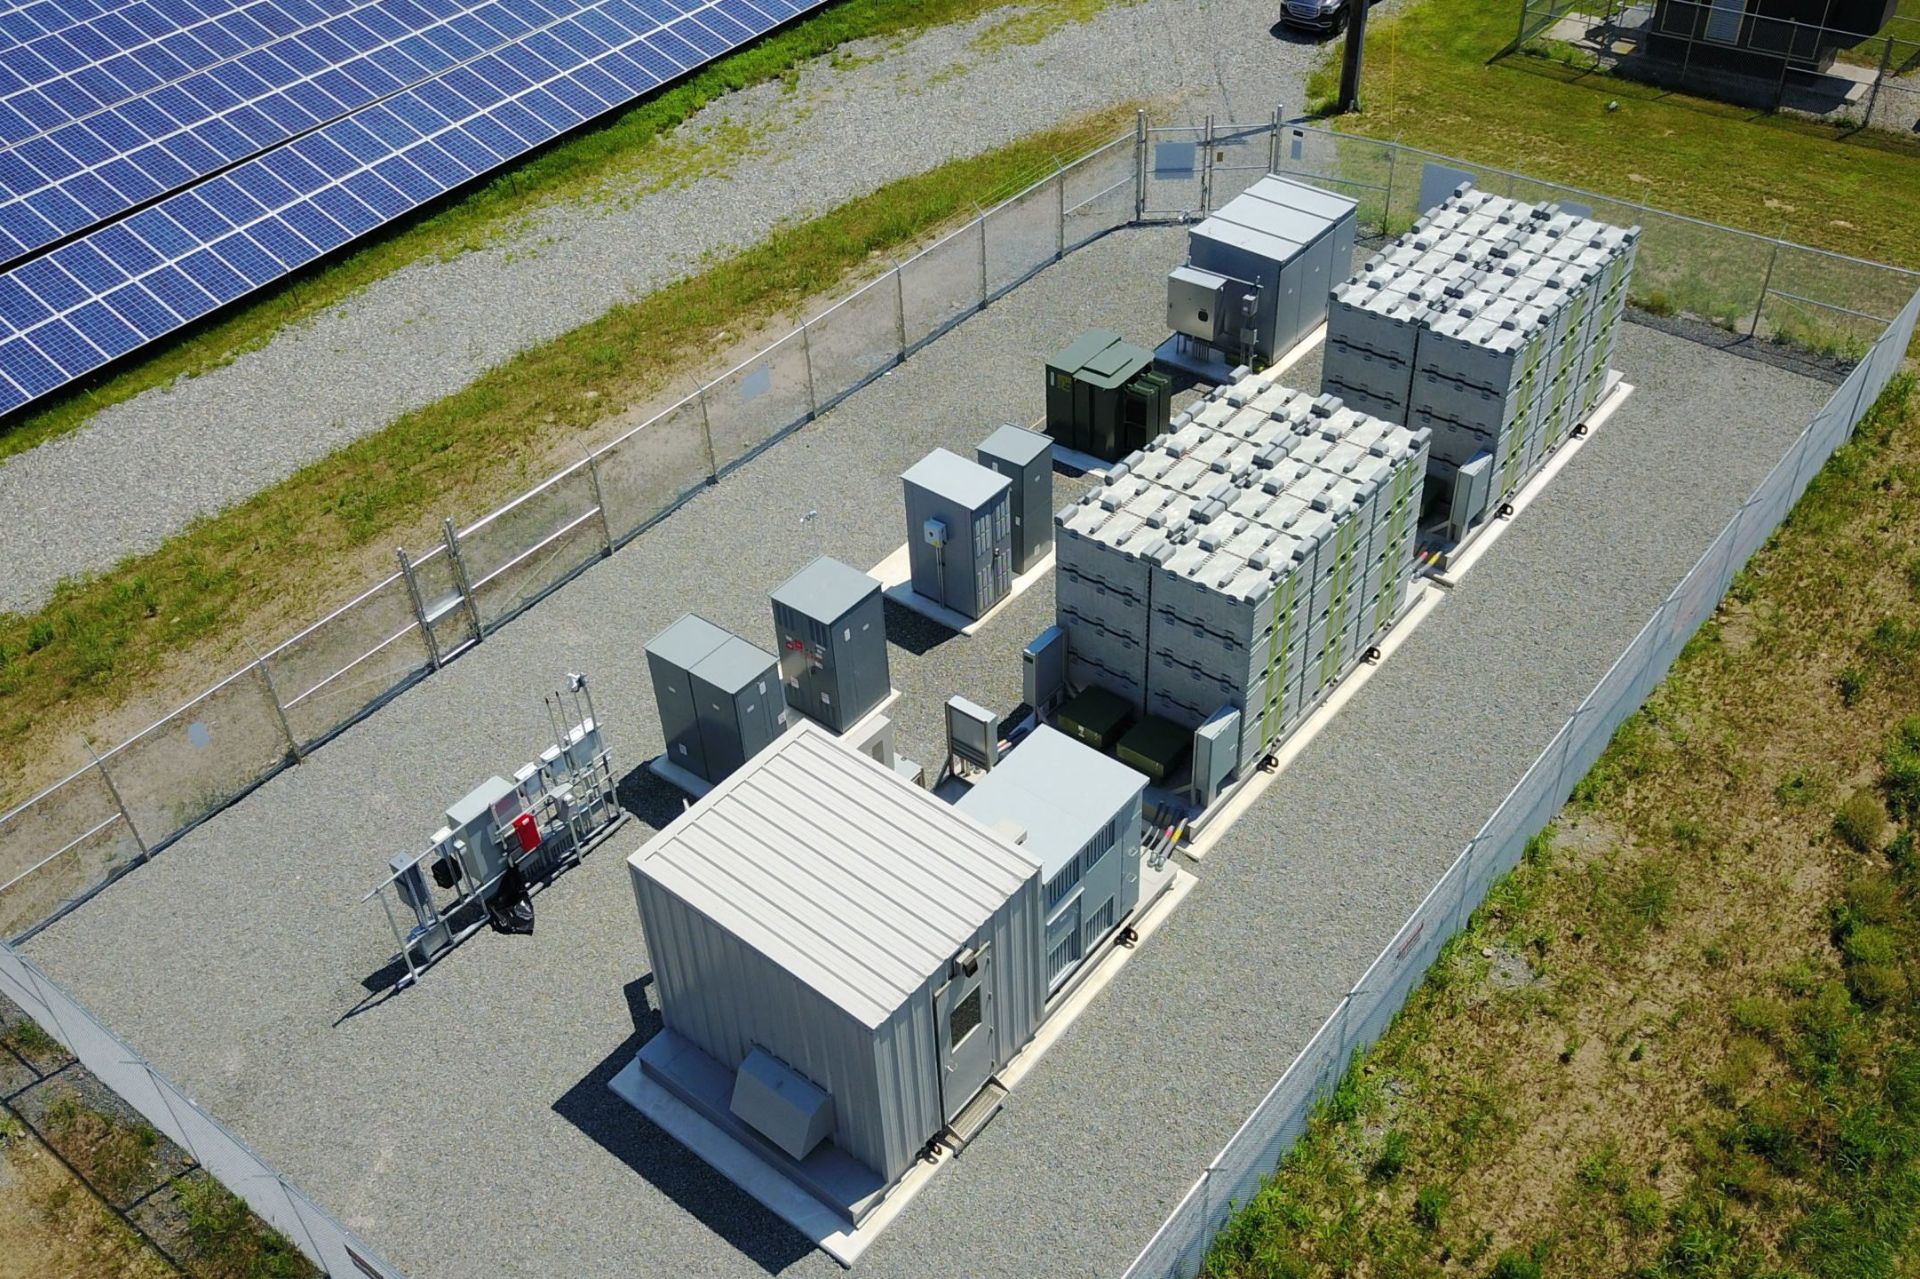 01-02-23-canal-solar-Baterias uma solução para transmissão e renováveis, aponta IRENA